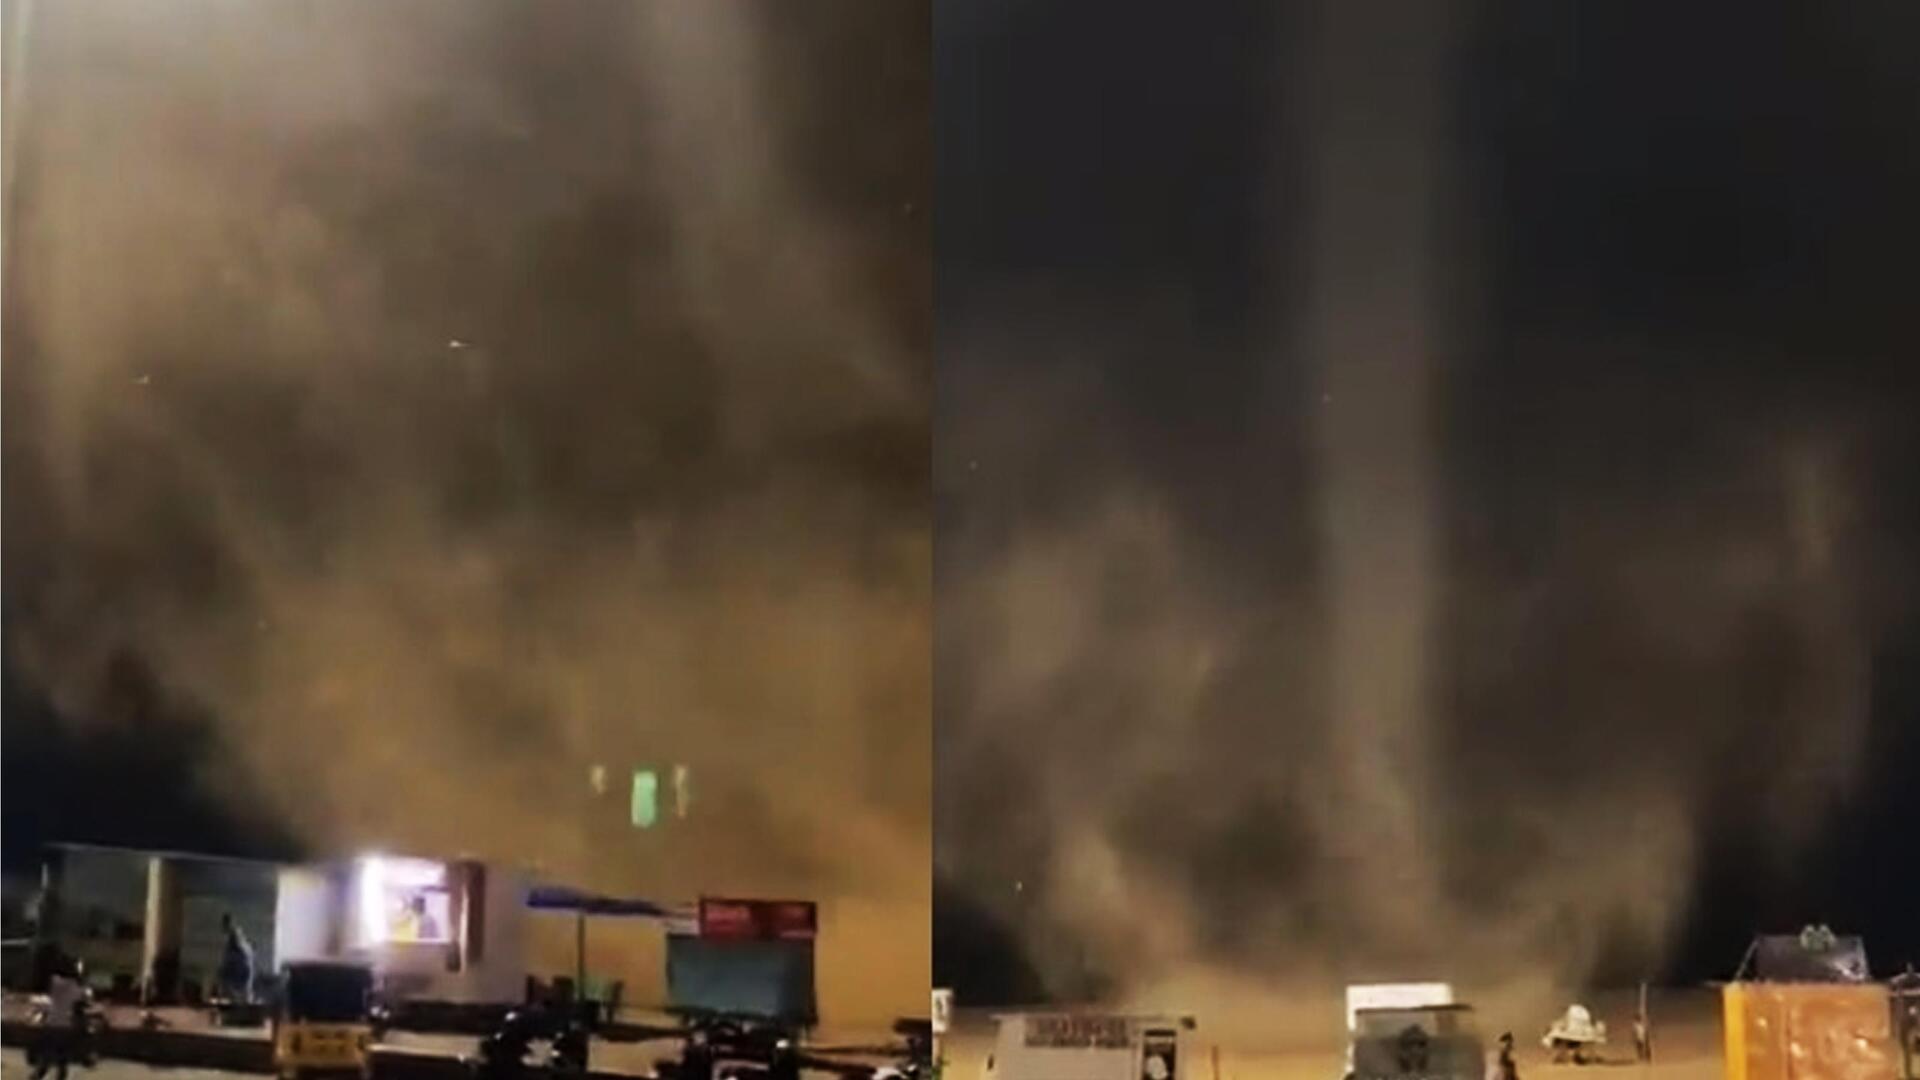 चेन्नई: मरीना समुद्र तट पर अनोखा तूफान देखकर लोग हुए हैरान, देखिए वायरल वीडियो 